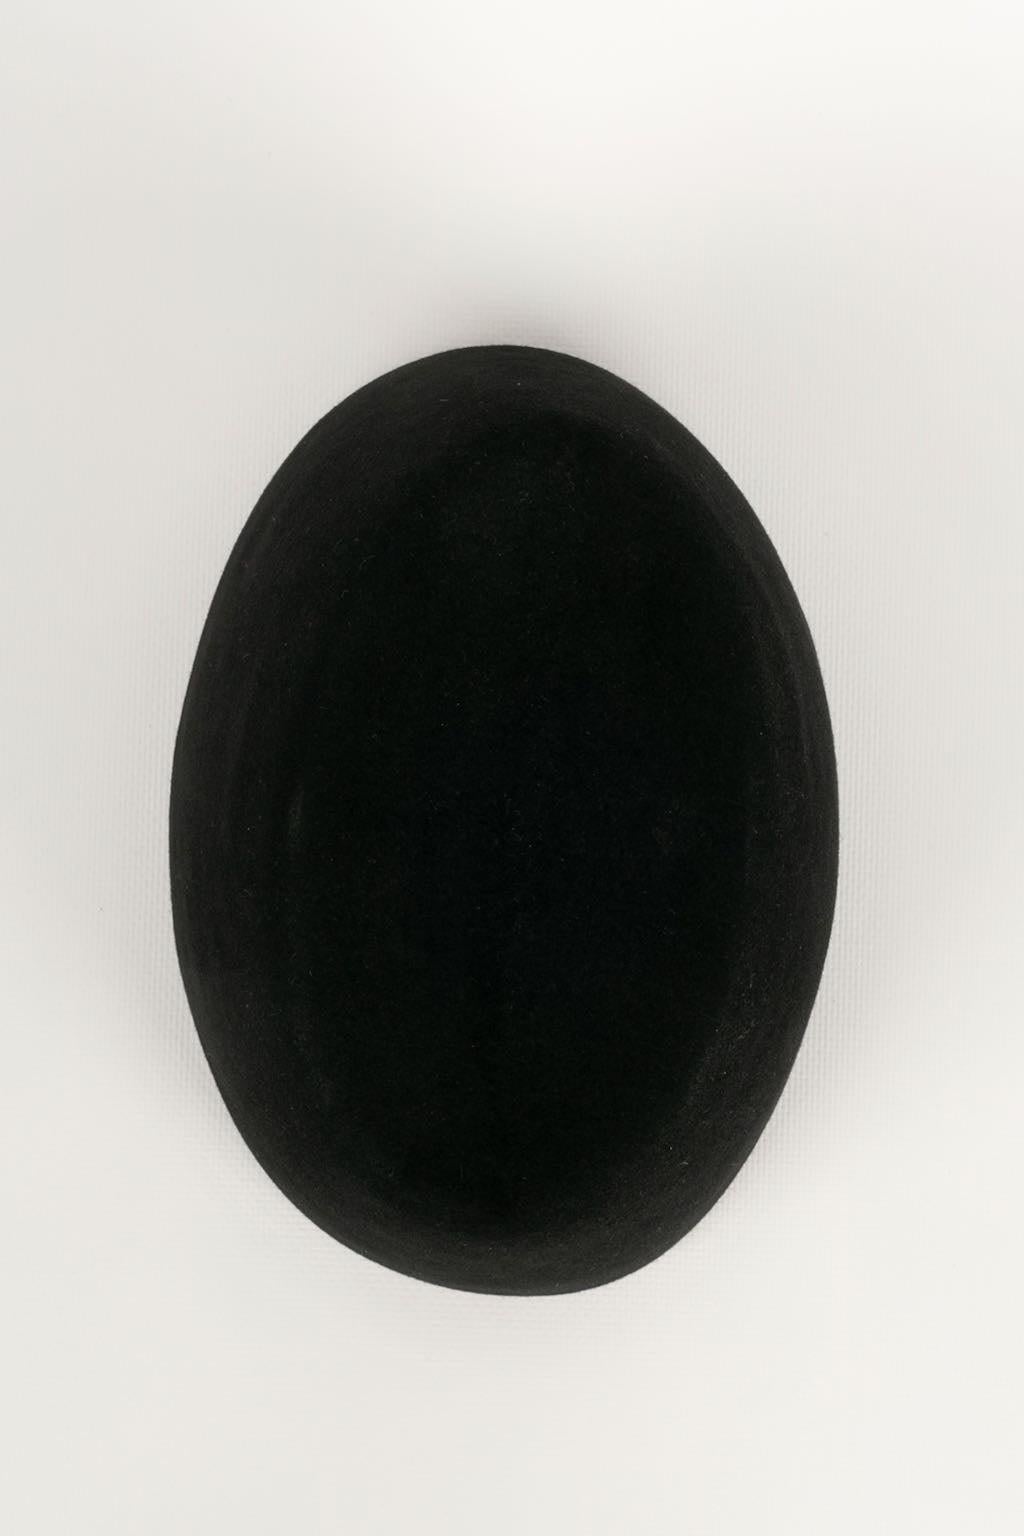 Yves Saint Laurent Fez Hat in Black Felt 2